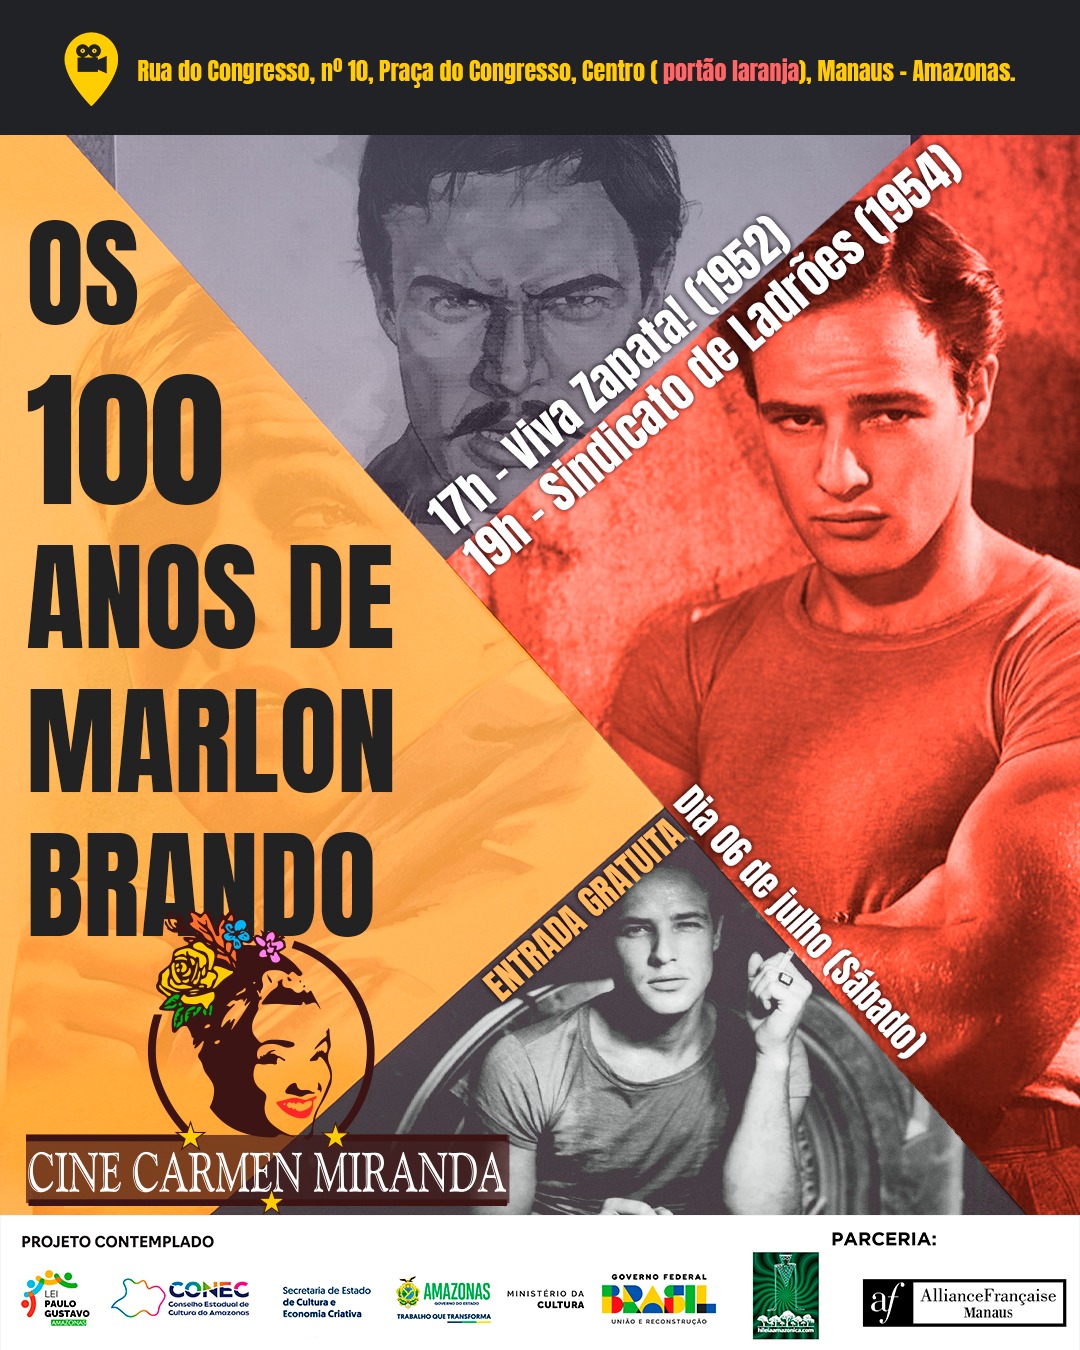 Cine Carmen Miranda exibe curtas com ator Adanilo, longas franceses e homenageia centenário de Marlon Brando